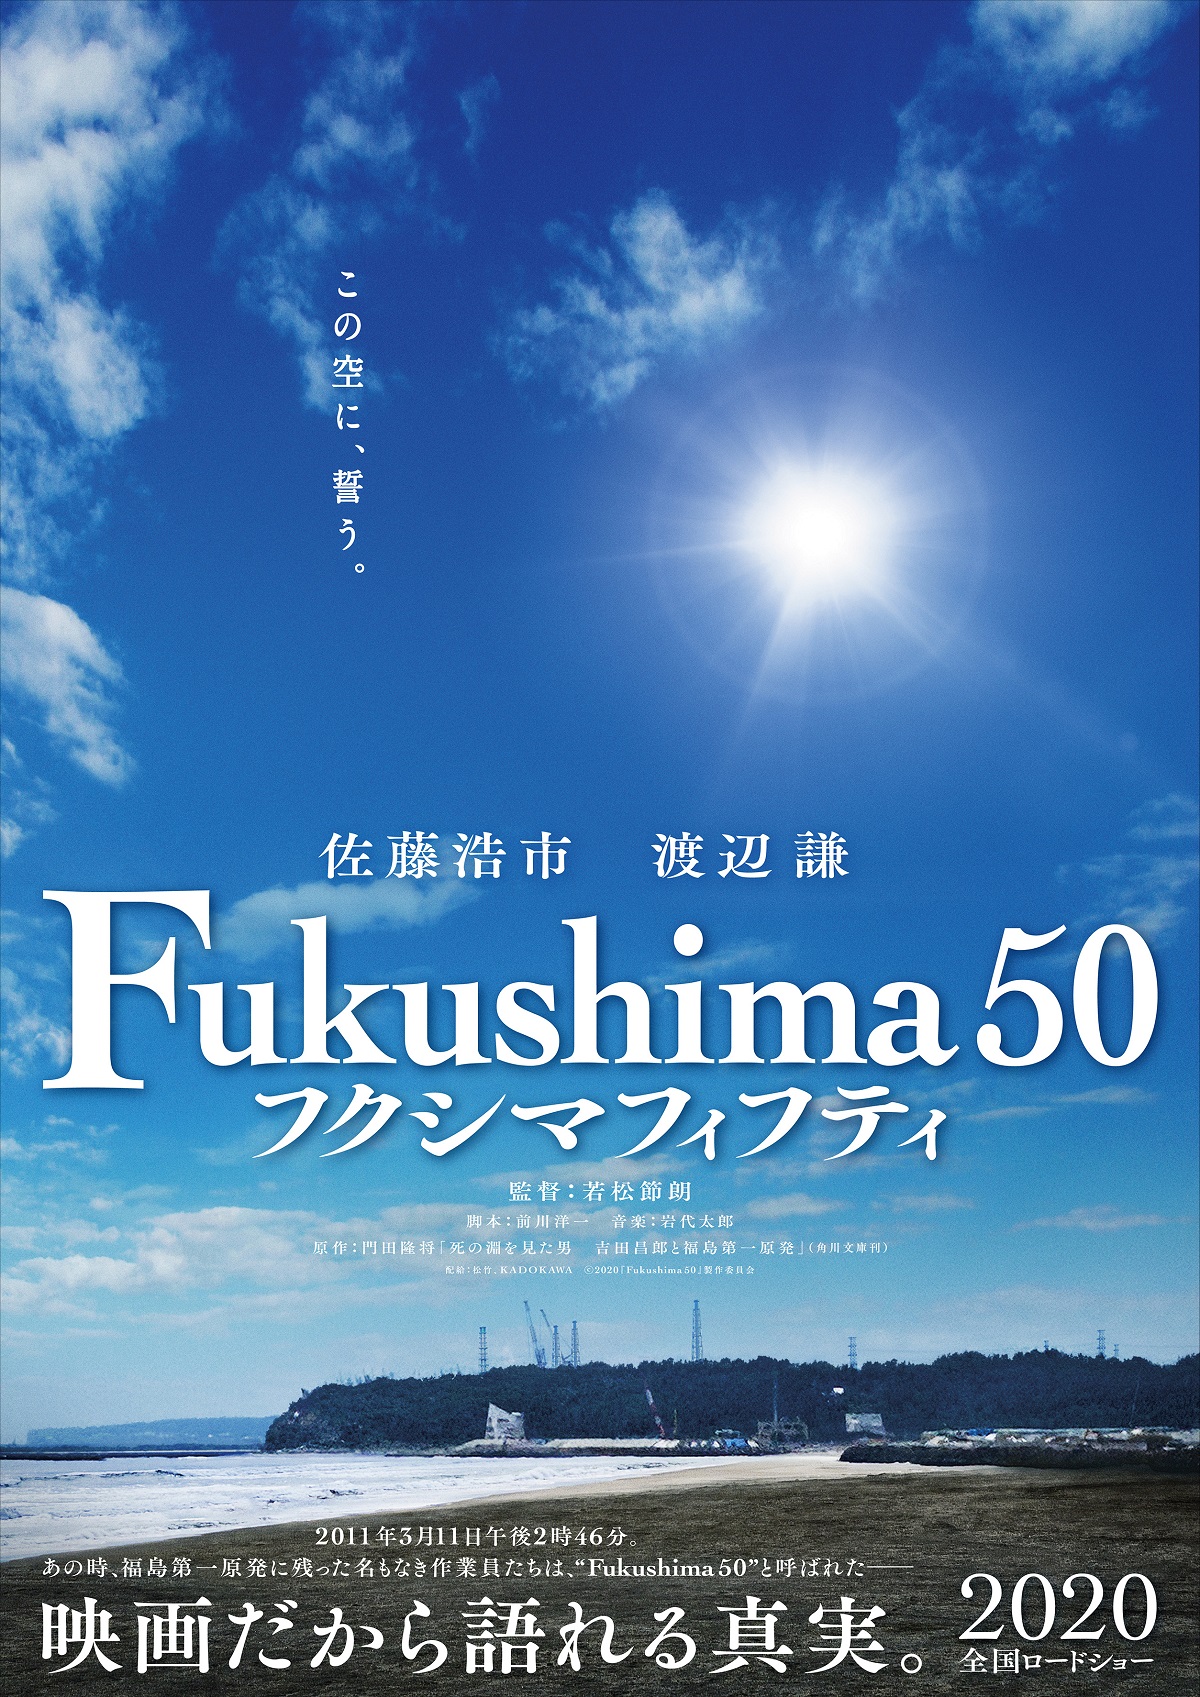 福島第一原発事故を描く映画 Fukushima 50 第一弾ビジュアル解禁 Moshi Moshi Nippon もしもしにっぽん